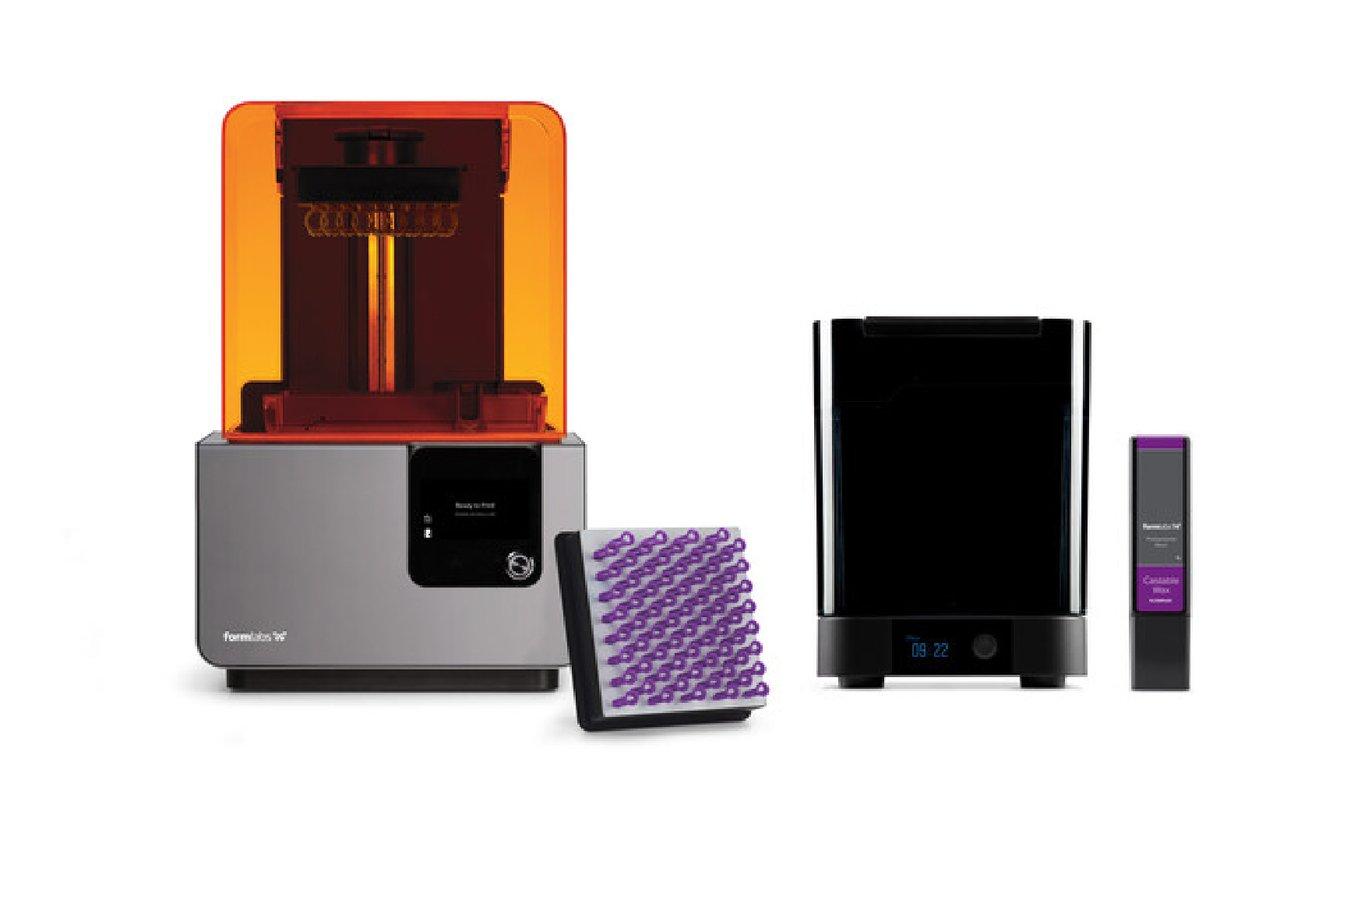 L'équipement complet pour l'impression 3D des moules de coulée imprimés en Castable Wax Resin : l'imprimante stéréolithographique Form 2, le poste de lavage automatisé Form Wash, une cartouche de Castable Wax Resin, une plateforme de fabrication.